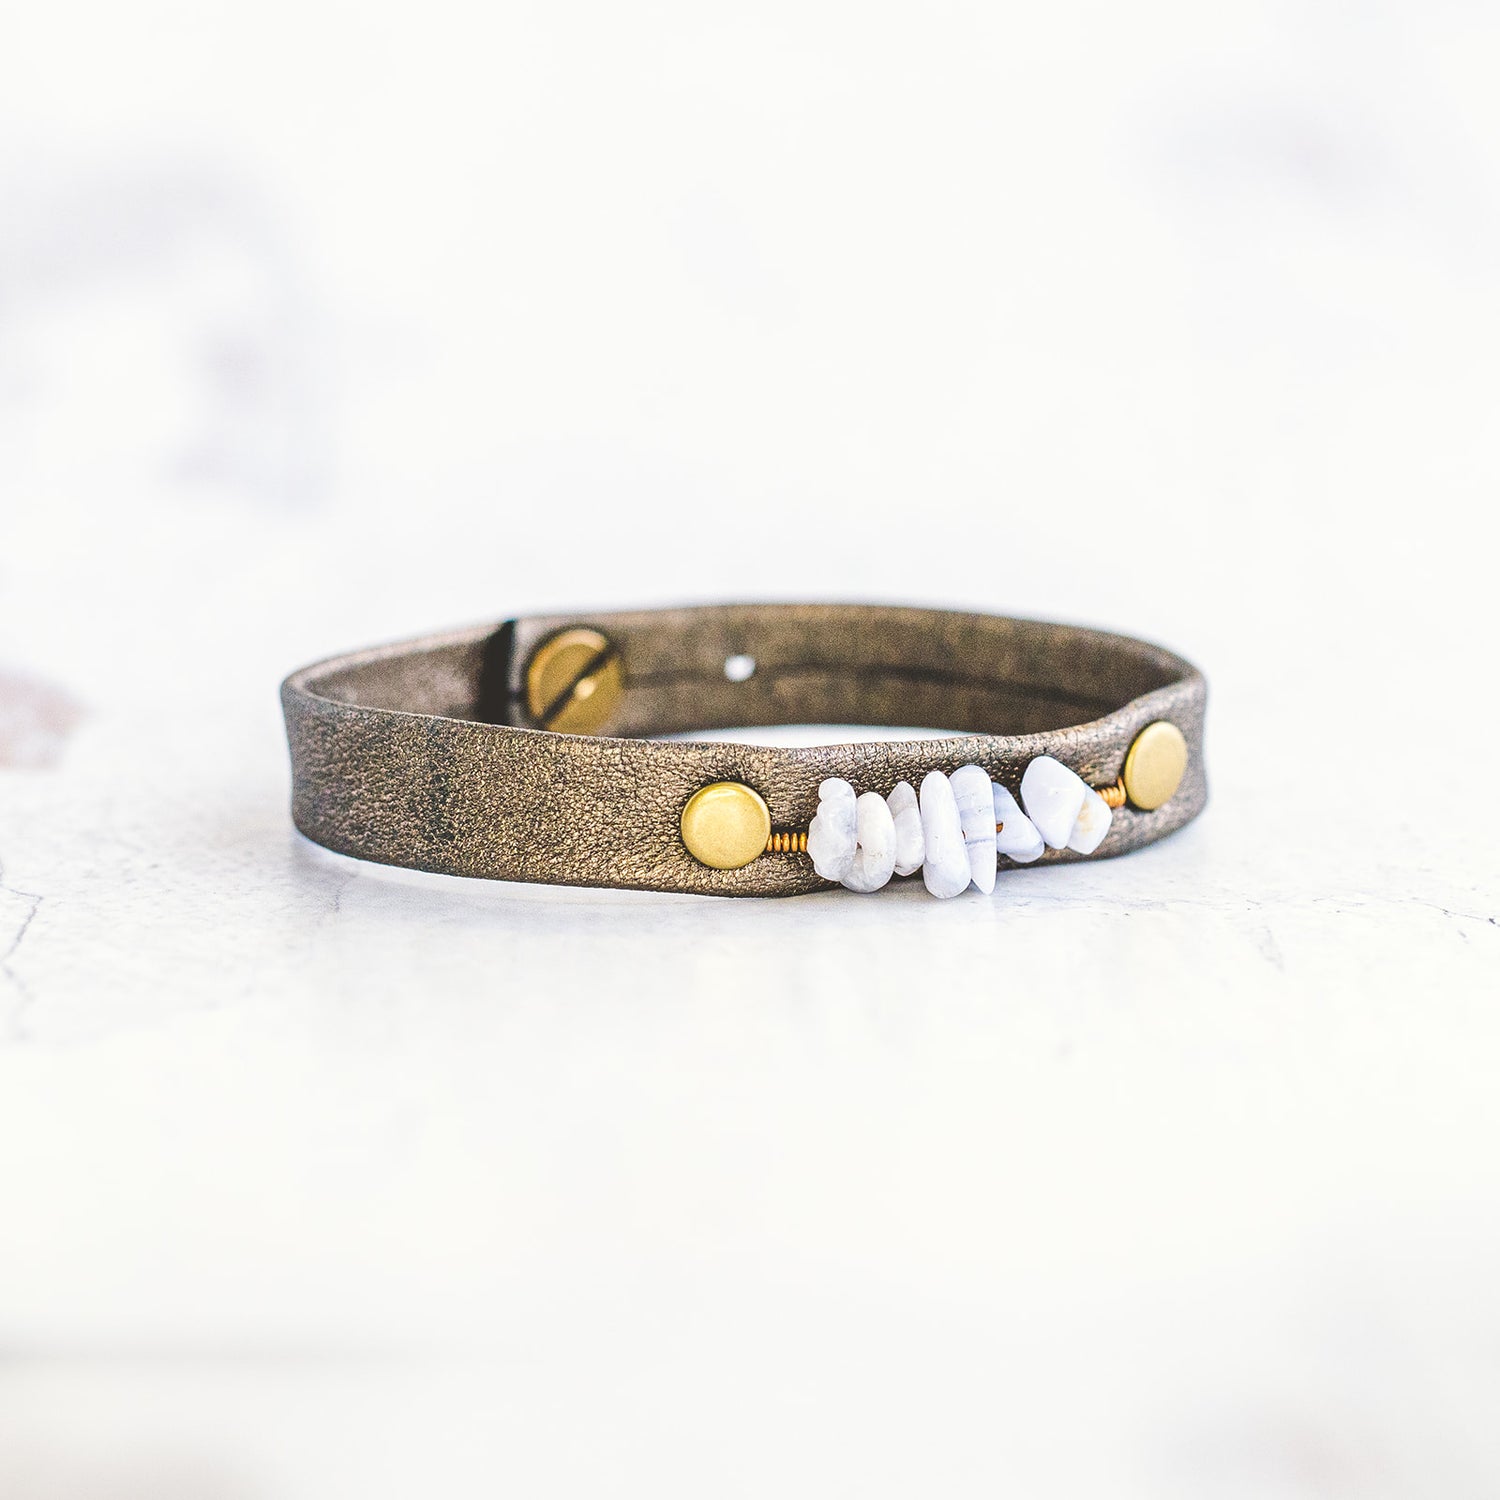 Pebble Bracelet - Antique Brass